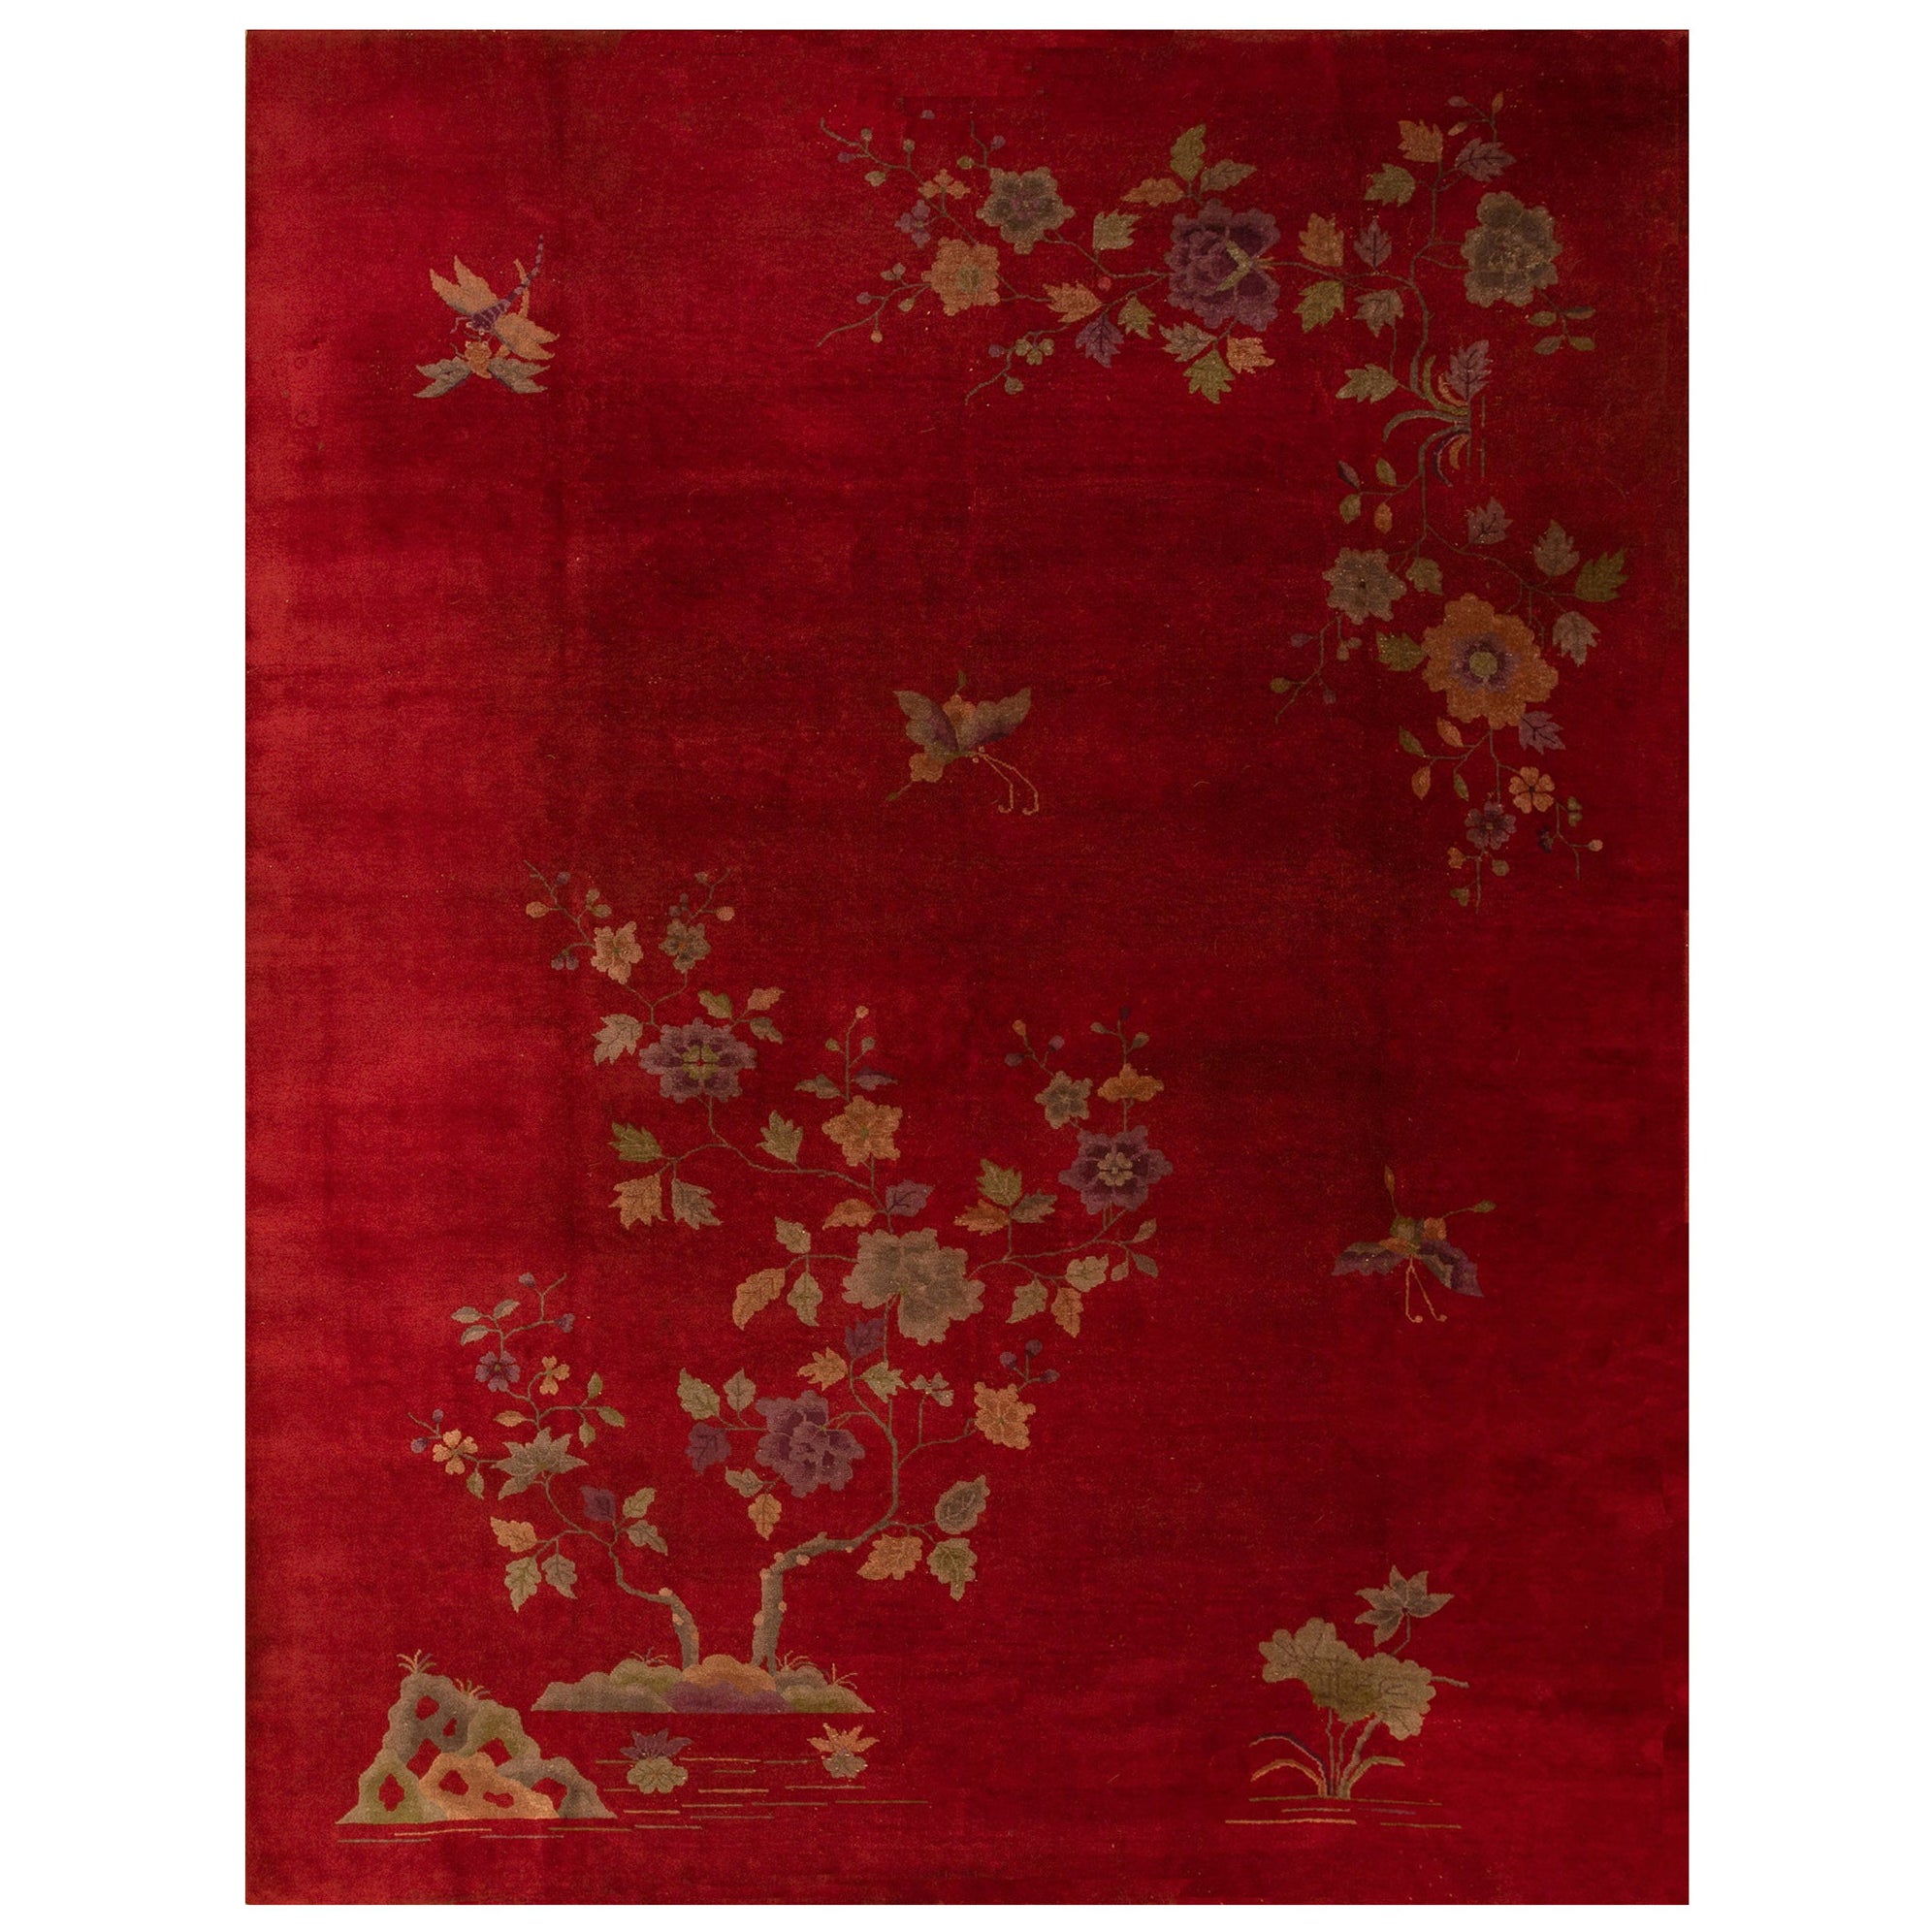 Chinesischer Art-déco-Teppich aus den 1920er Jahren ( 9'' x 12'' - 275 x 365)